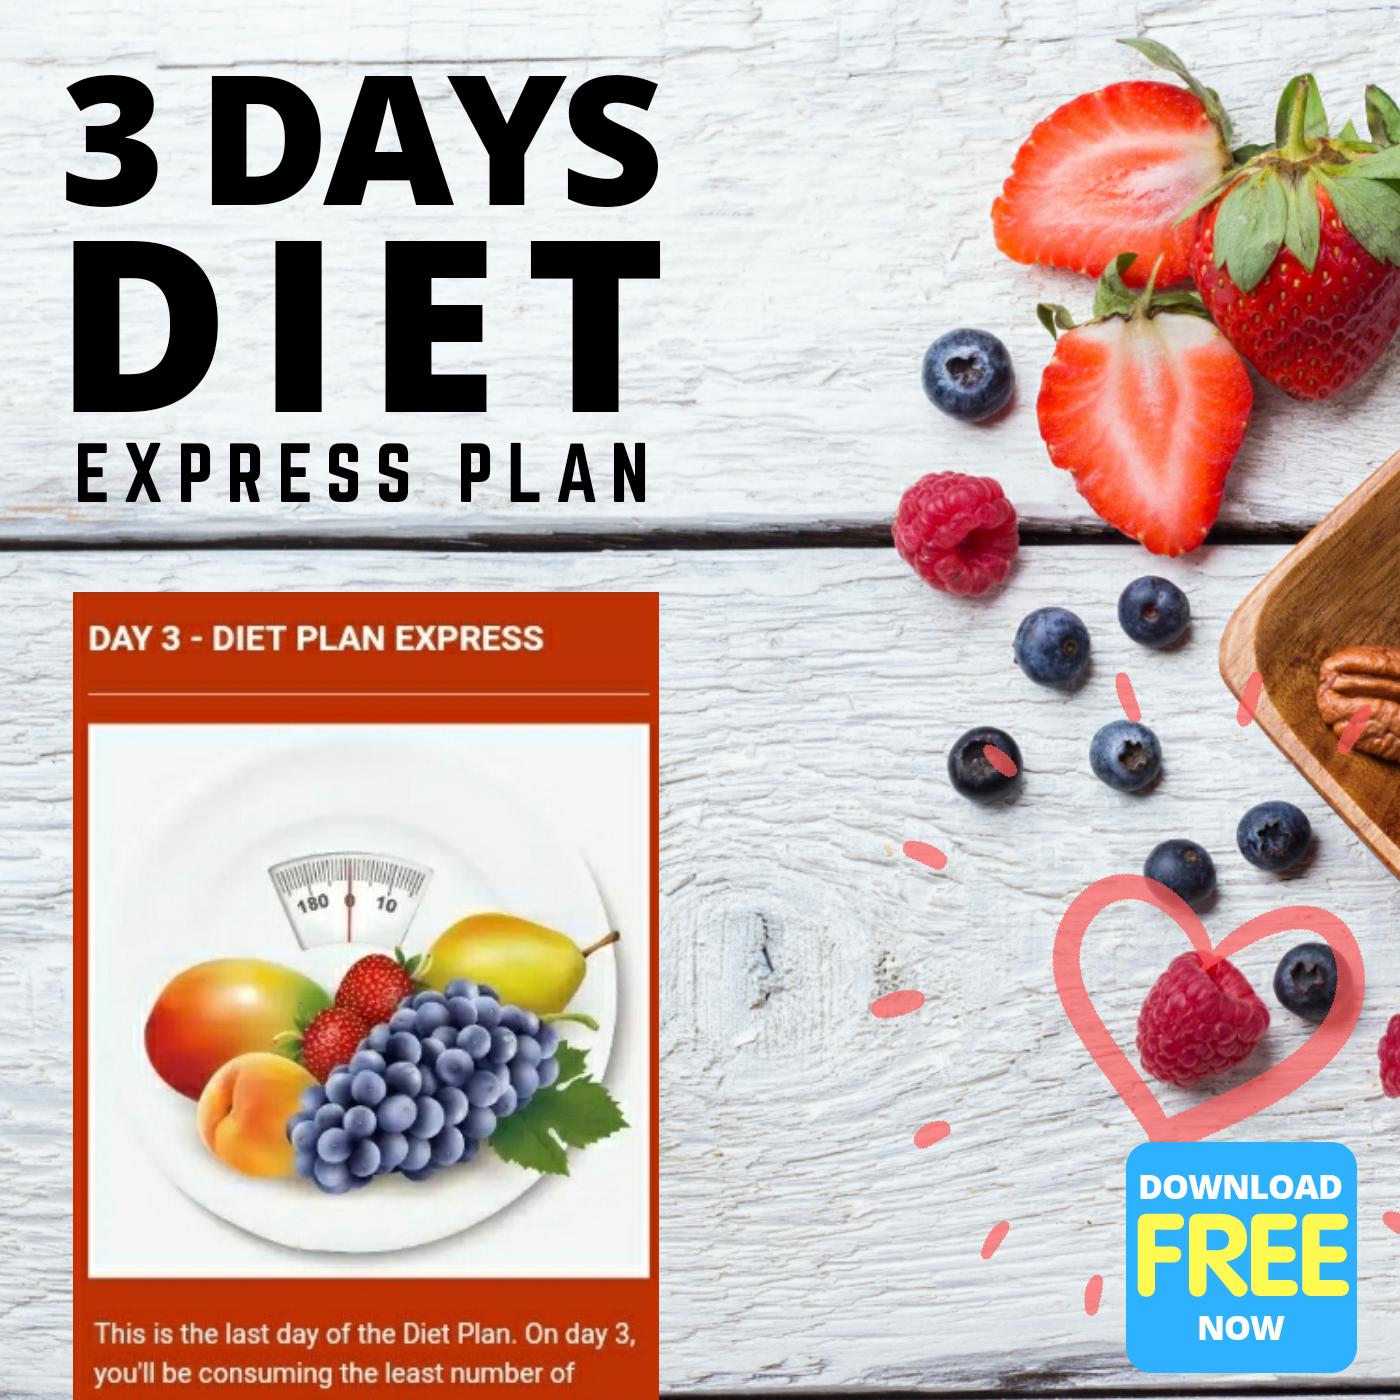 3 Day Diet. Express plan